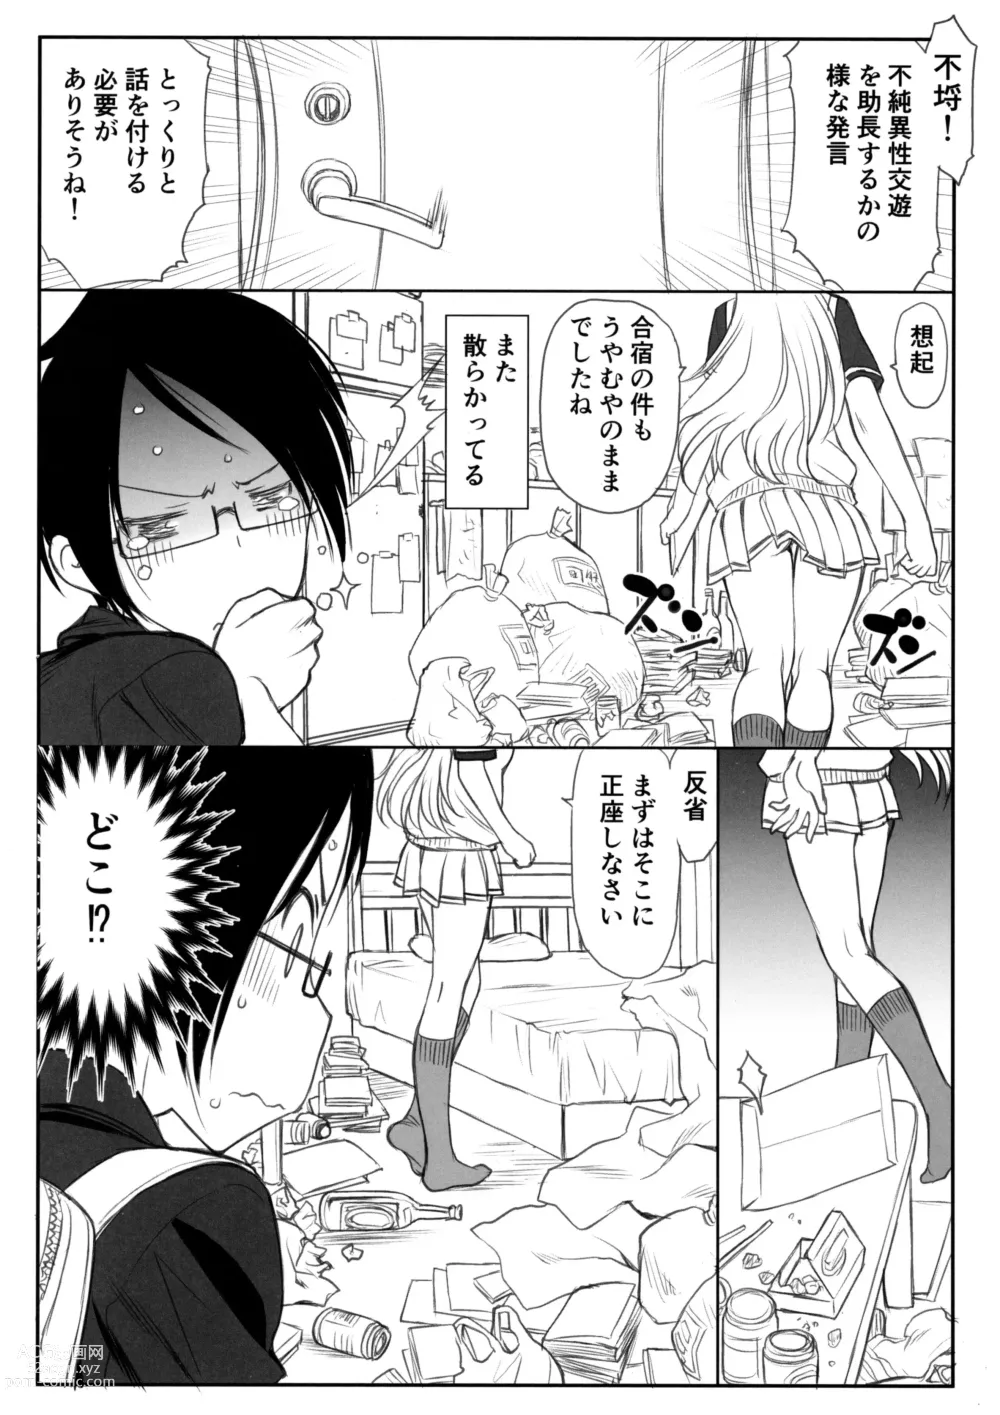 Page 6 of doujinshi Sensei wa Seisou ga Dekinai